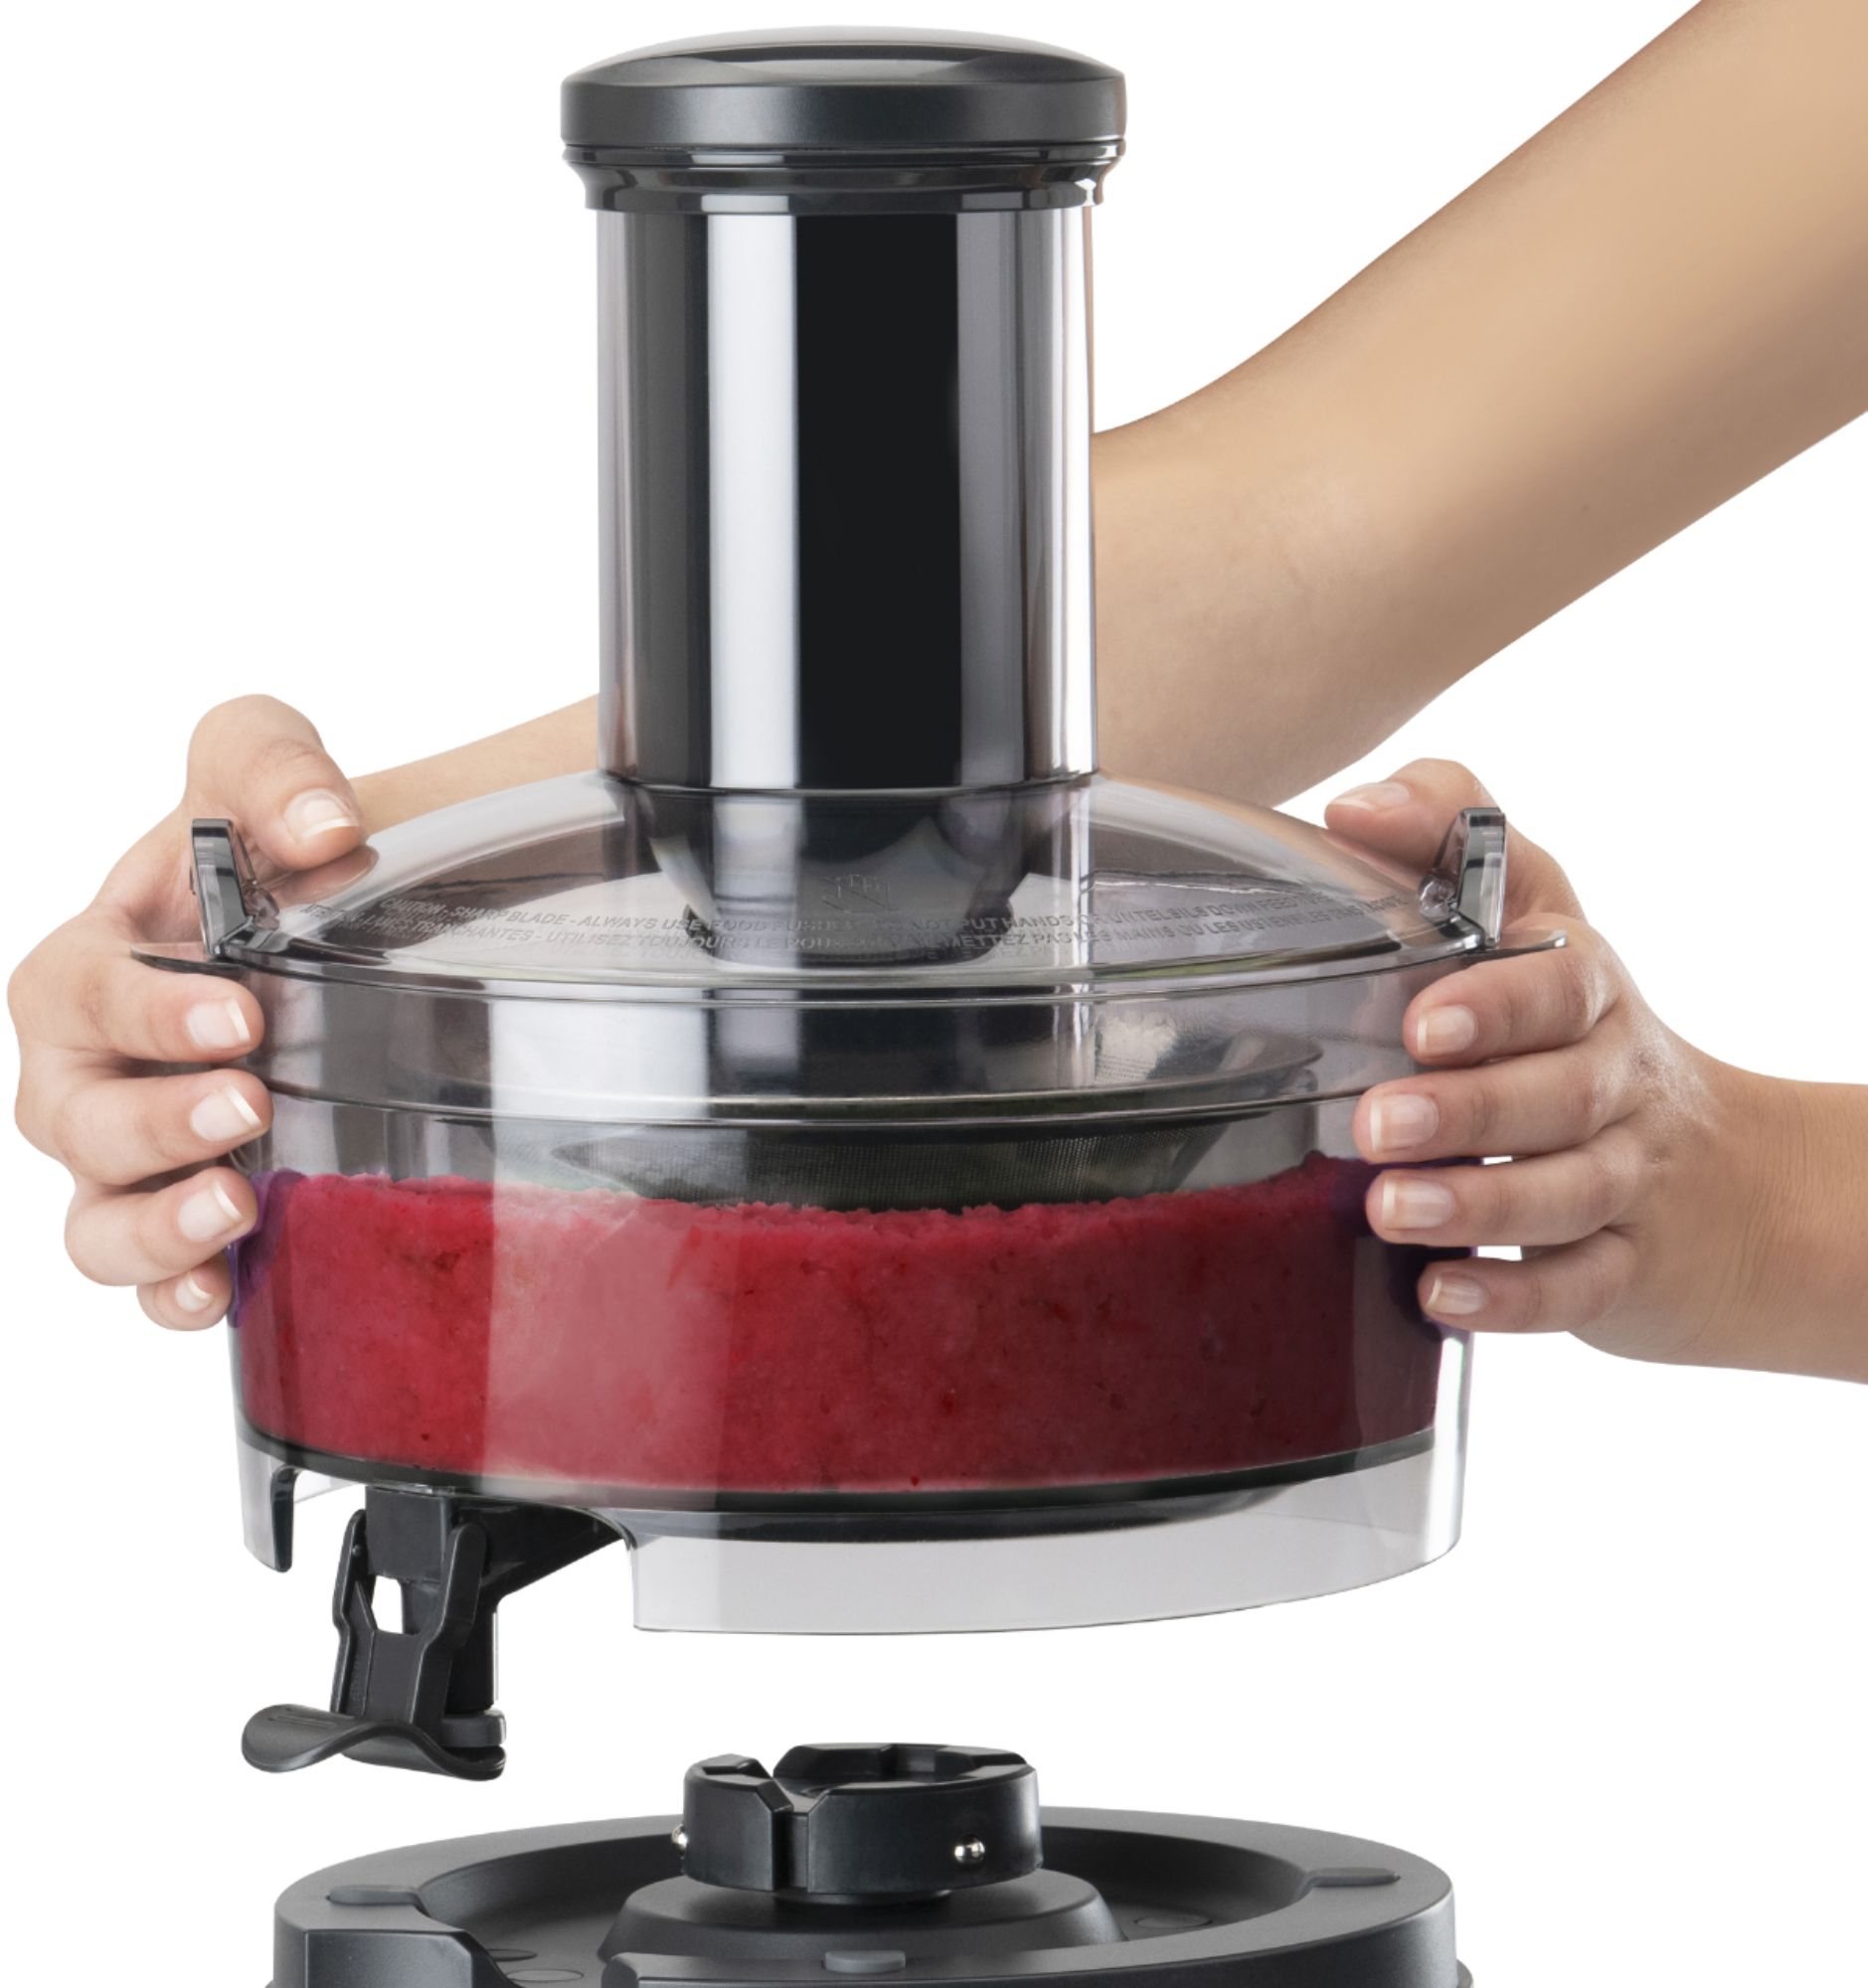 Nutribullet juicer new - appliances - by owner - sale - craigslist